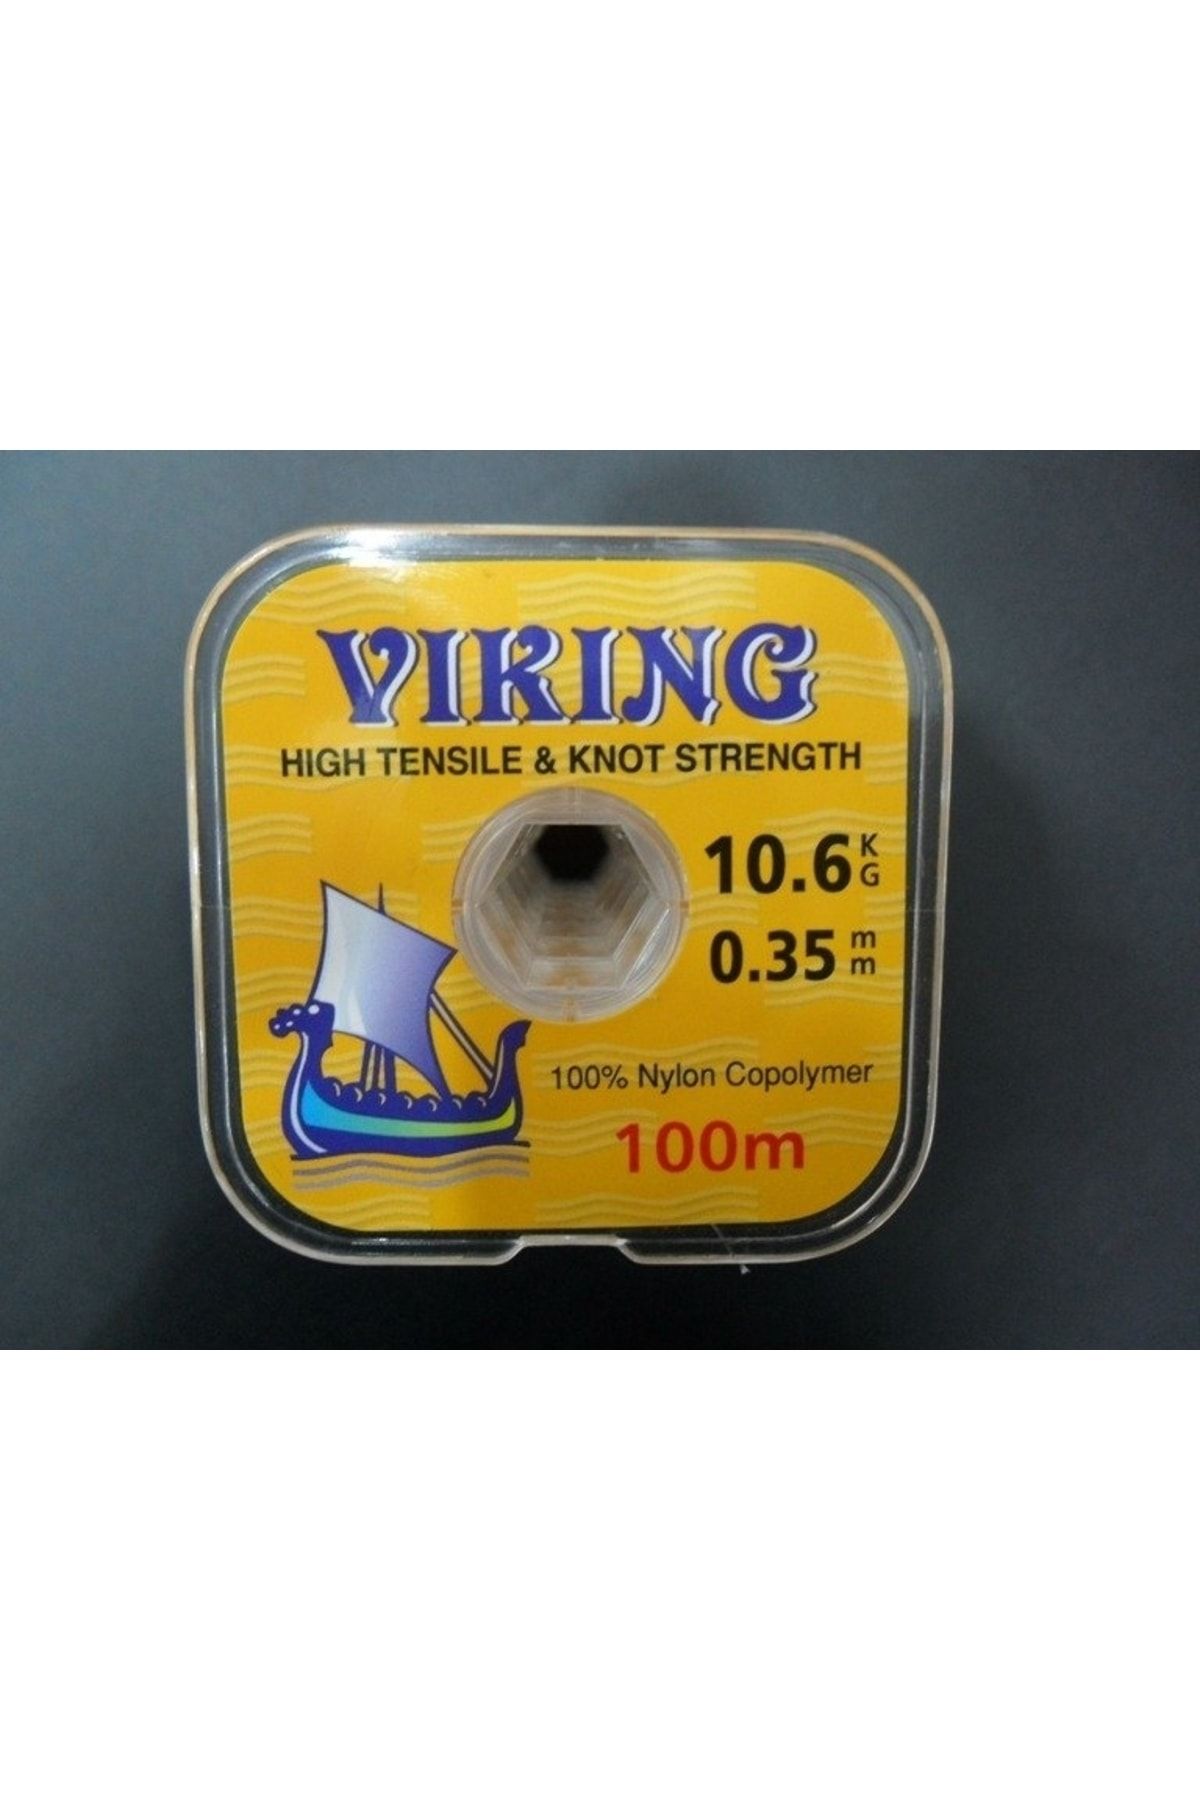 Viking 100% MITSUBISHI (JAPAN) COPOLYMER 100 MT